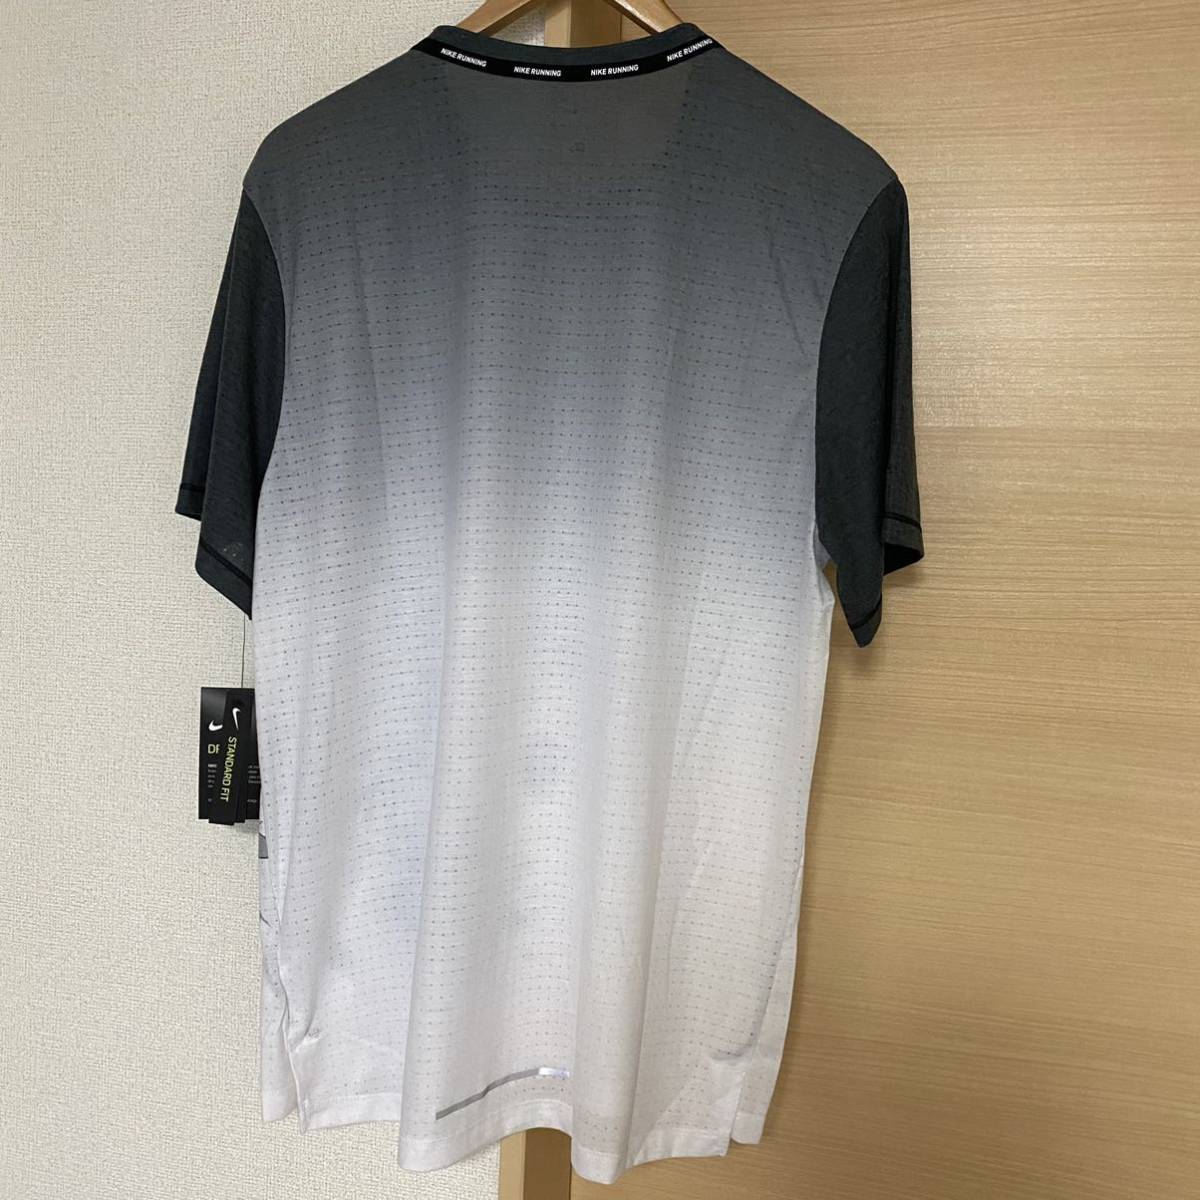 新品 NIKE Tシャツ XL DB3930 ライズ 365 ワイルド ラン ナイキ ランニング トレーニング DRI-FIT 半袖シャツ 送料無料 送料込 速乾 010